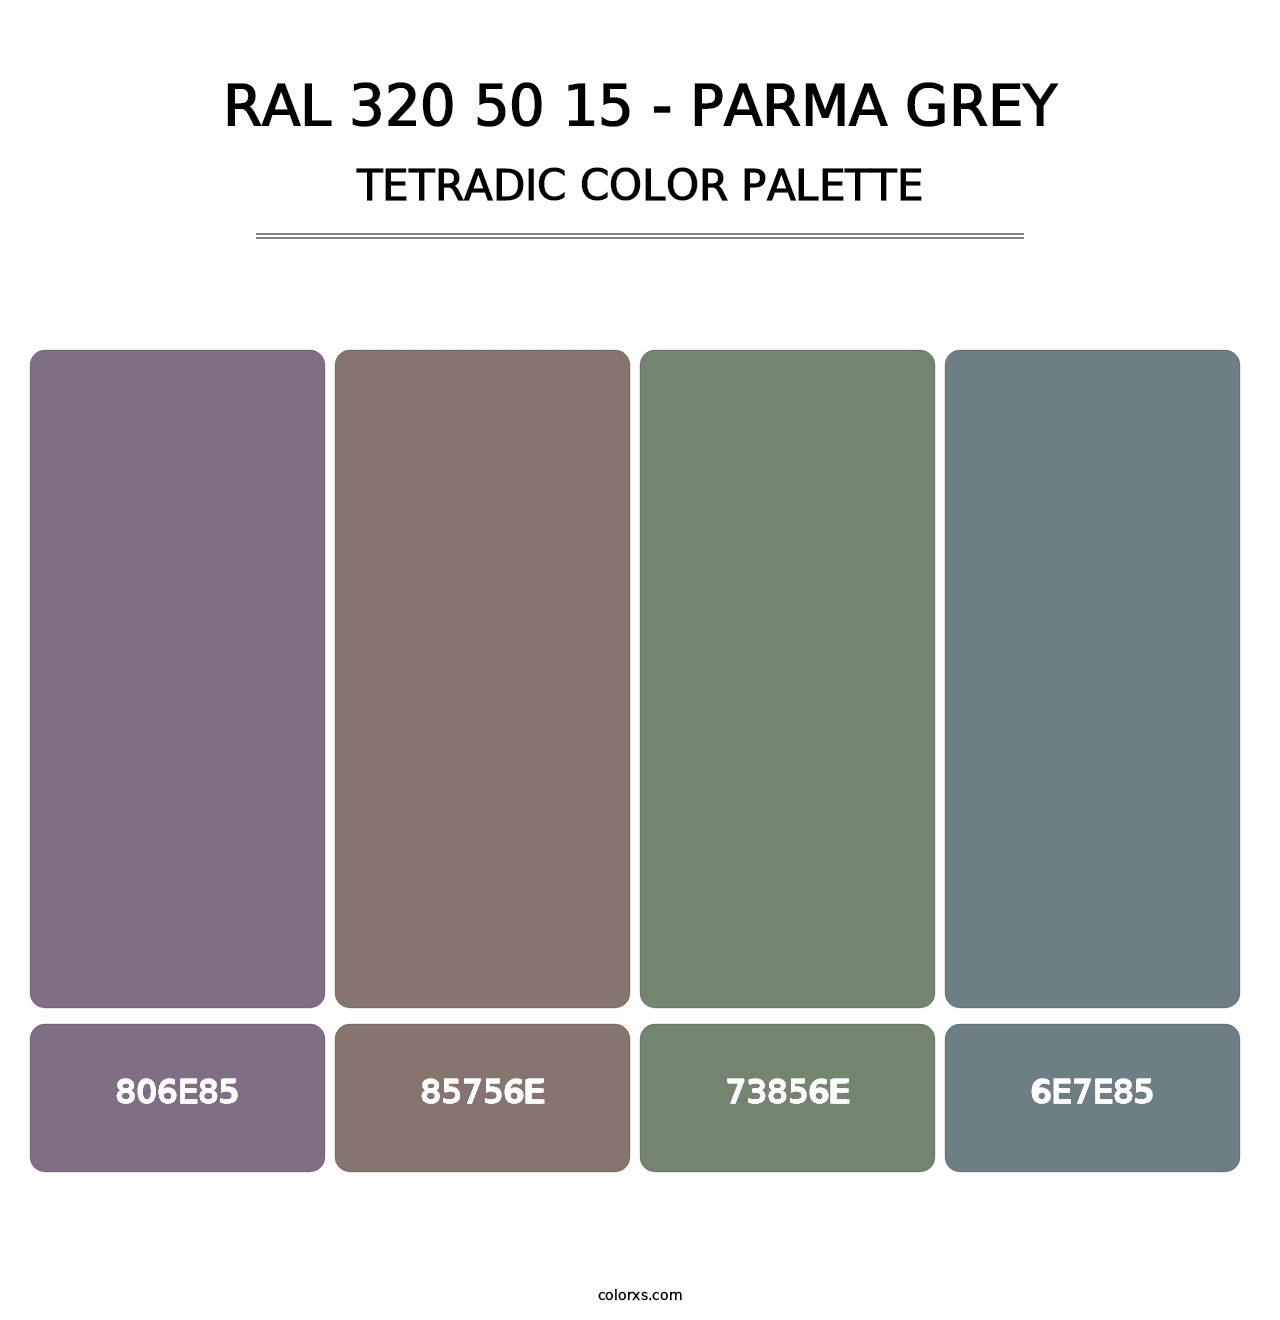 RAL 320 50 15 - Parma Grey - Tetradic Color Palette